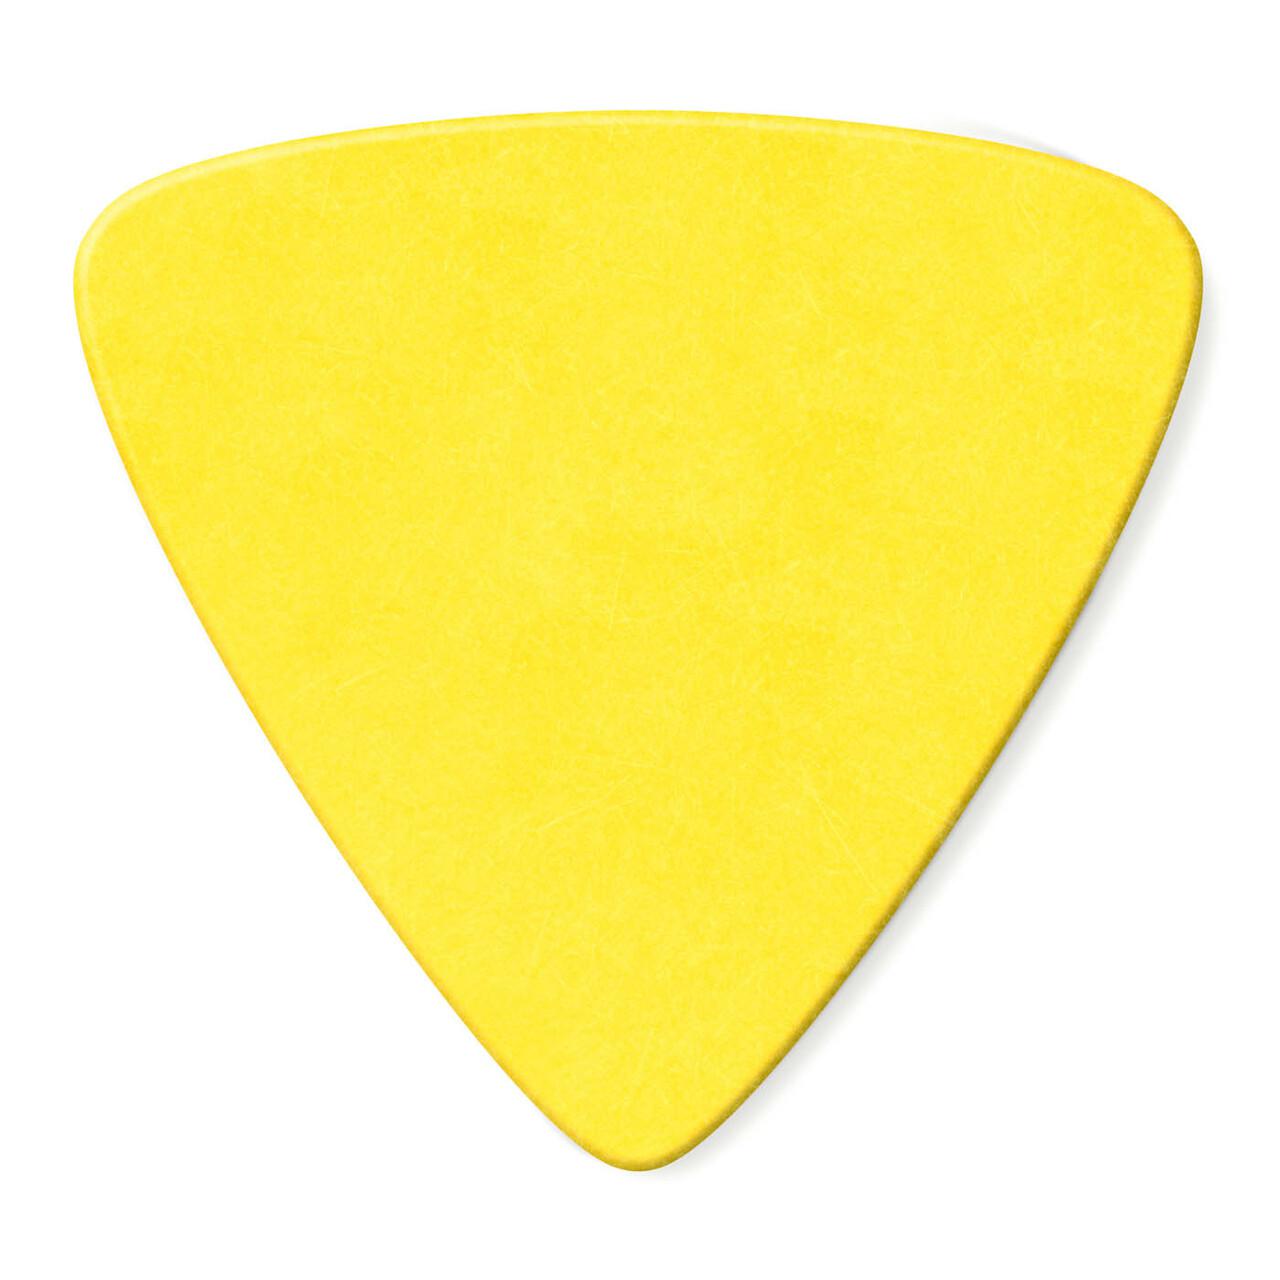 Dunlop - 36 Plumillas Tortex Triángulo, Calibre: .73 Color: Amarillo Mod.431B.73_45